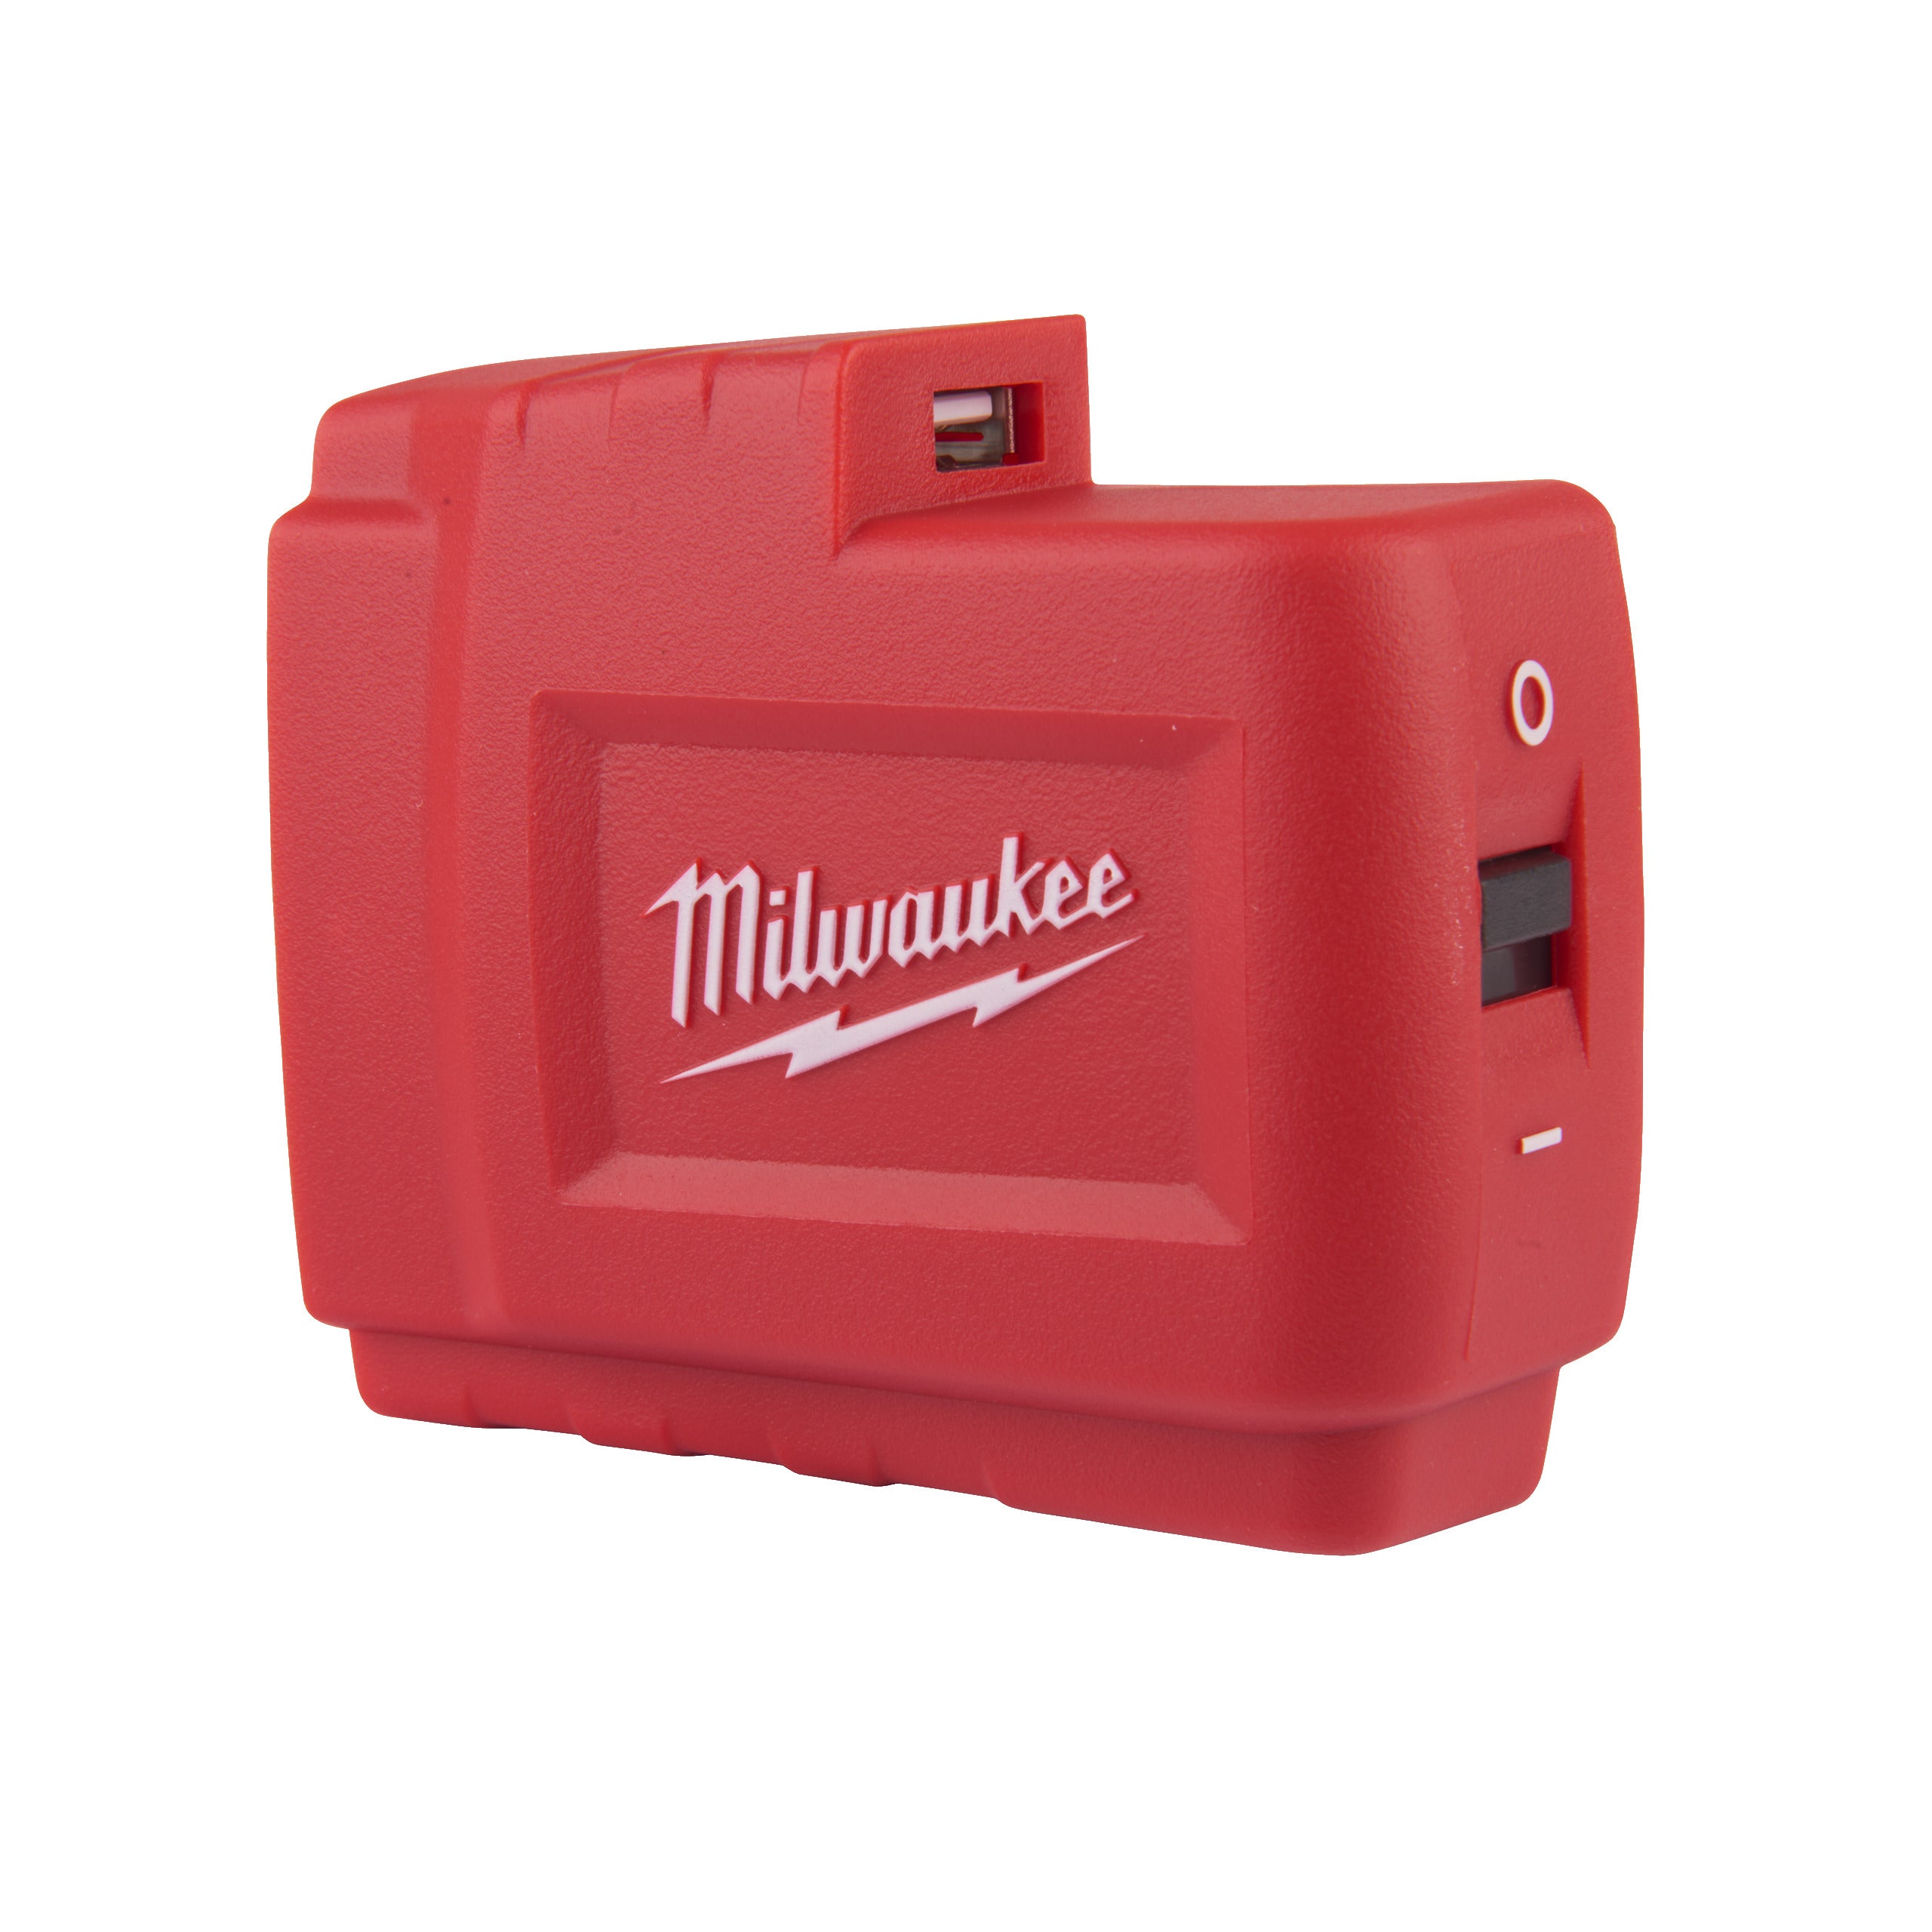 Controller USB M18™ 2,1A (M18 USB PS HJ2) pentru jachete încălzite Milwaukee, cod 4932471597